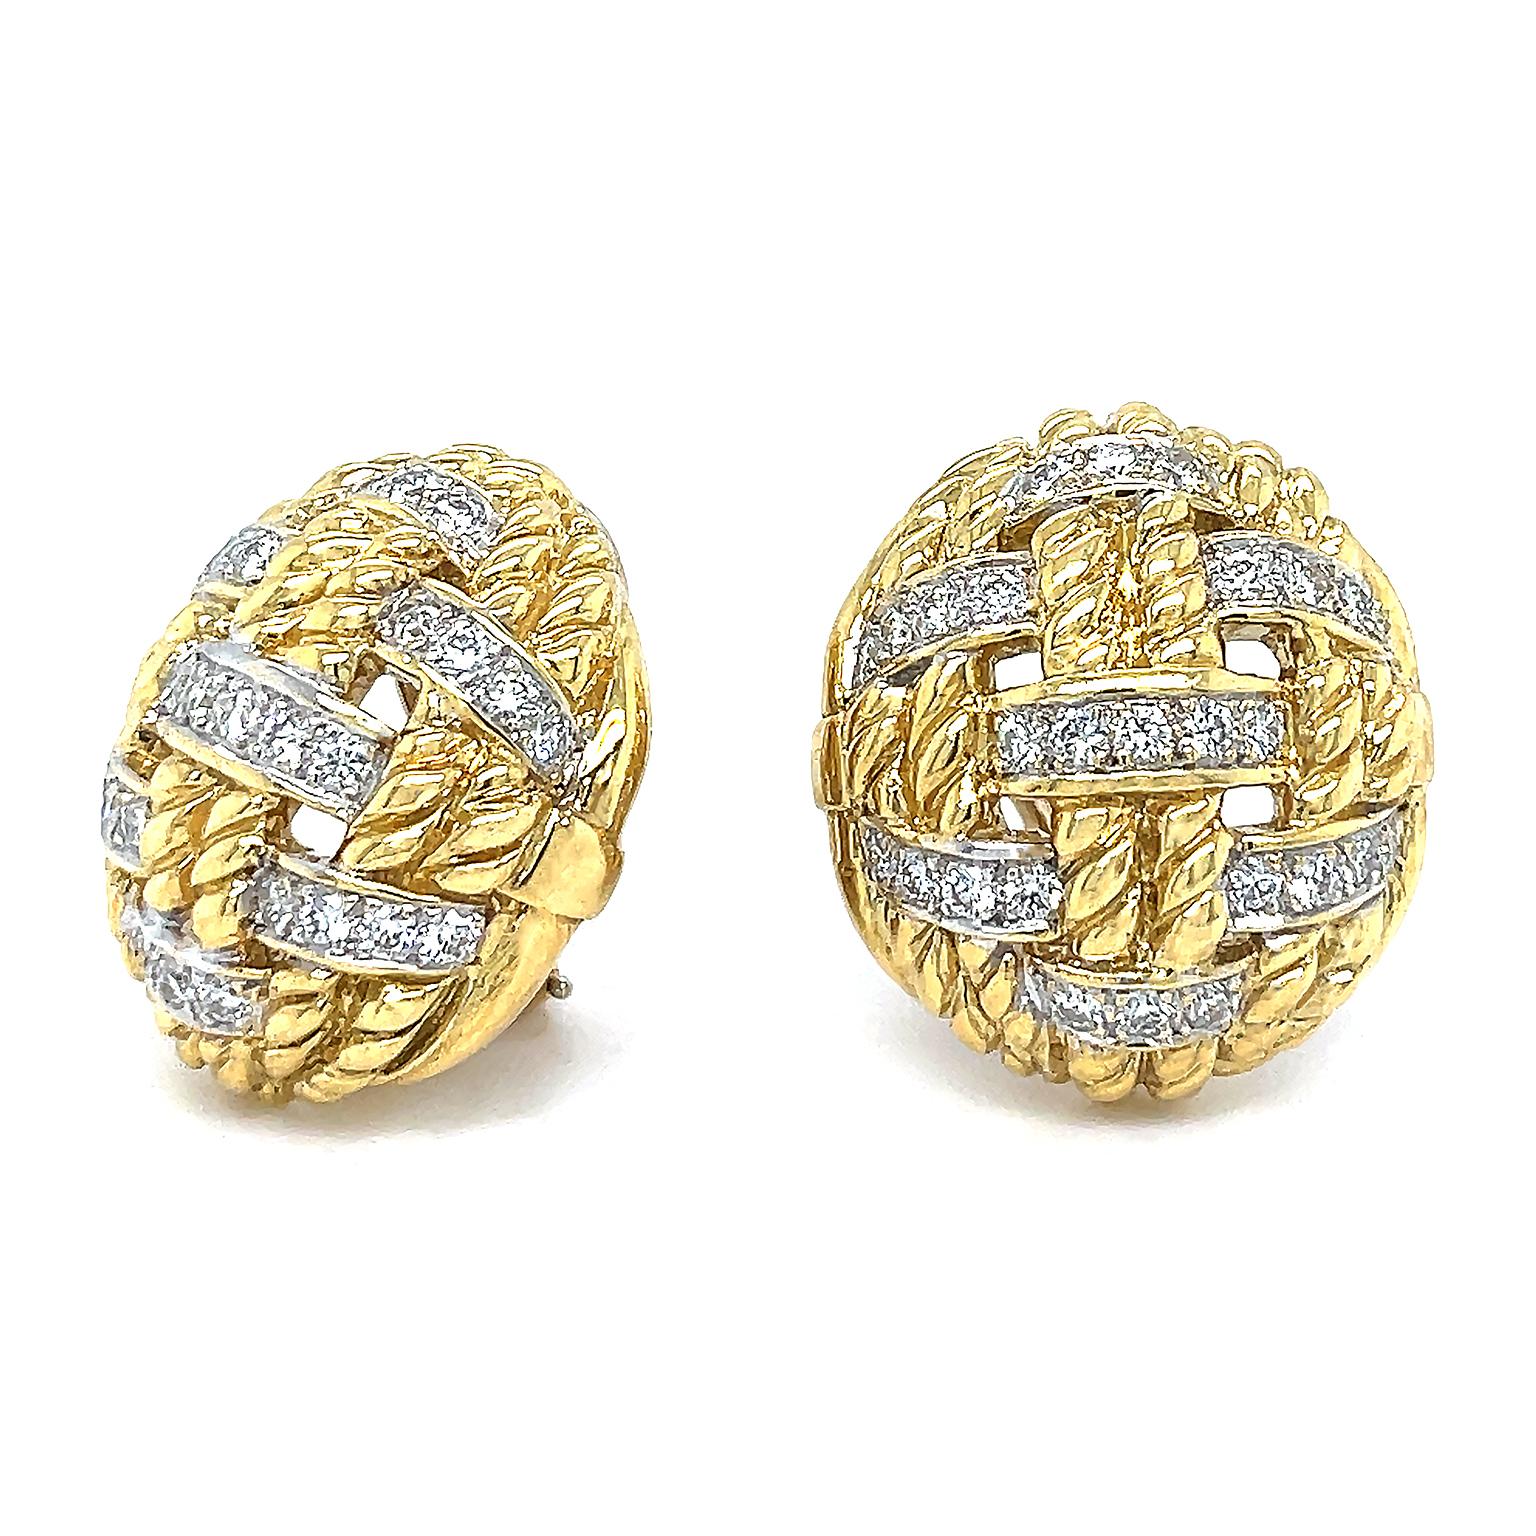 Der Glanz von 18 Karat Gelbgold wird durch die Brillanz von Diamanten in diesen einzigartigen Ohrringen unterstrichen. Das mit Diamanten im Brillantschliff verzierte Edelmetall ist in Form eines zu einer Kuppel geflochtenen Seils gestaltet. Das